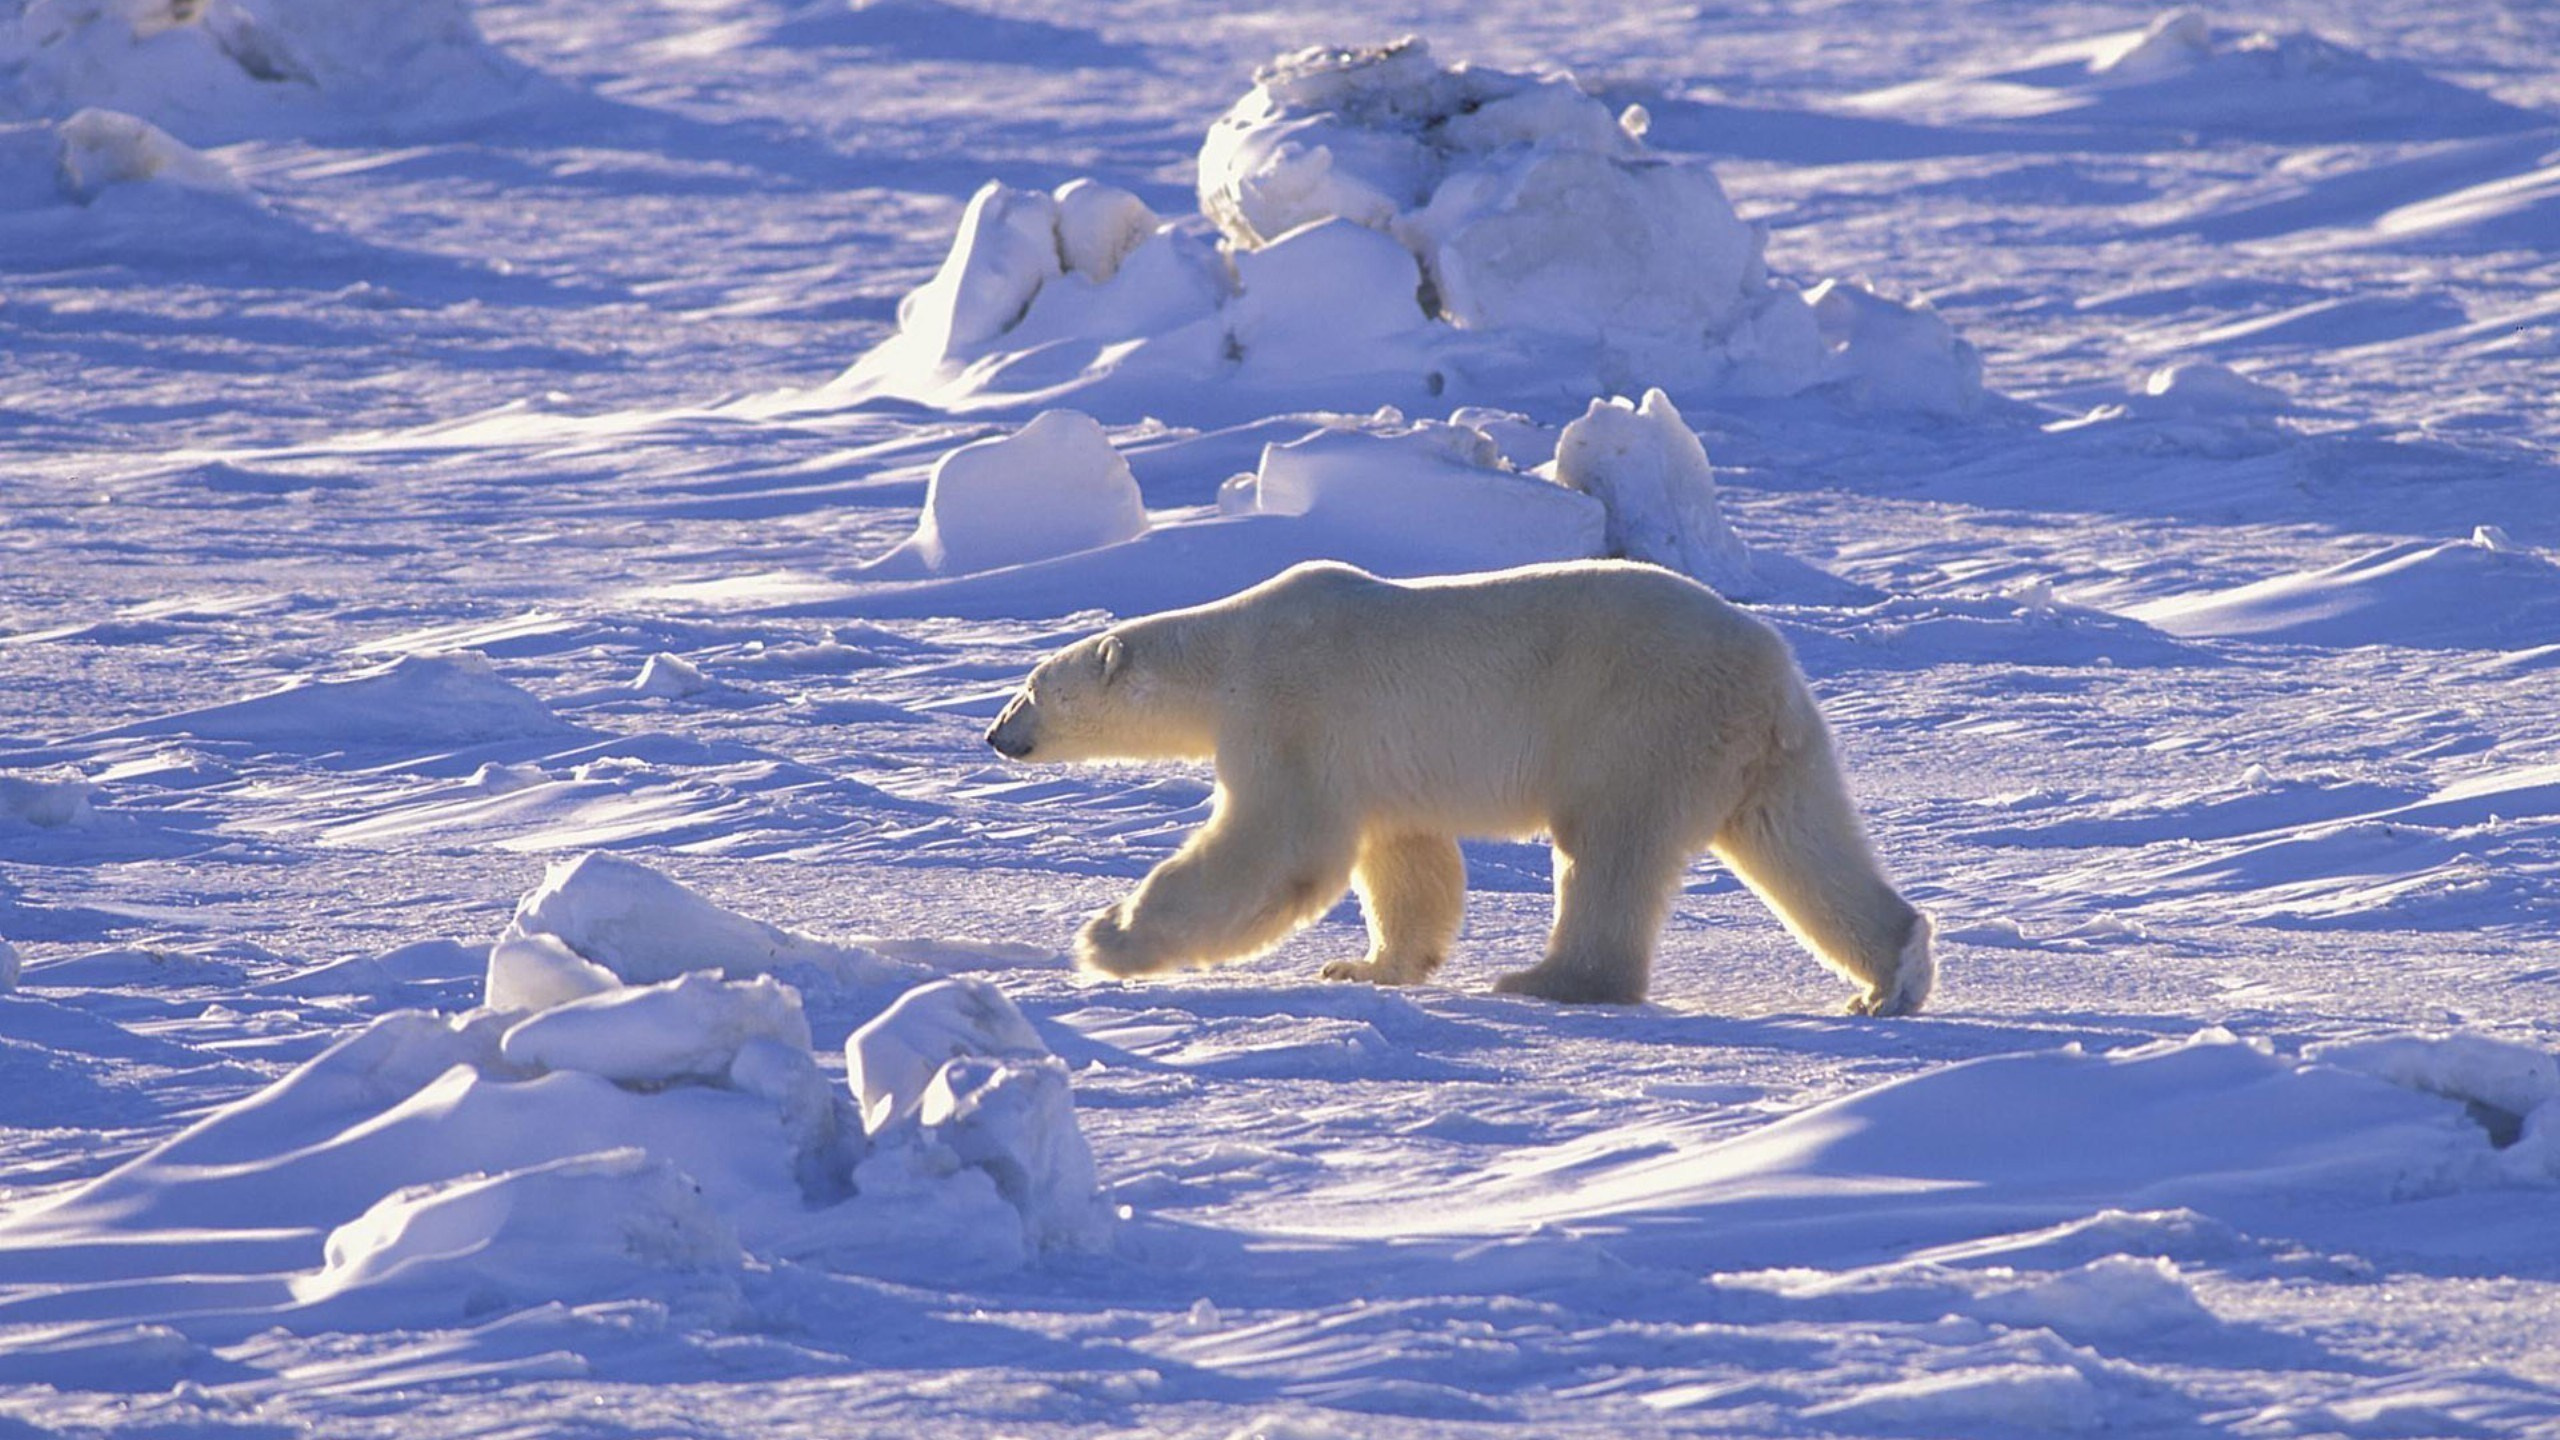 北极熊, 北极, 熊, 极地冰盖, 野生动物 壁纸 2560x1440 允许